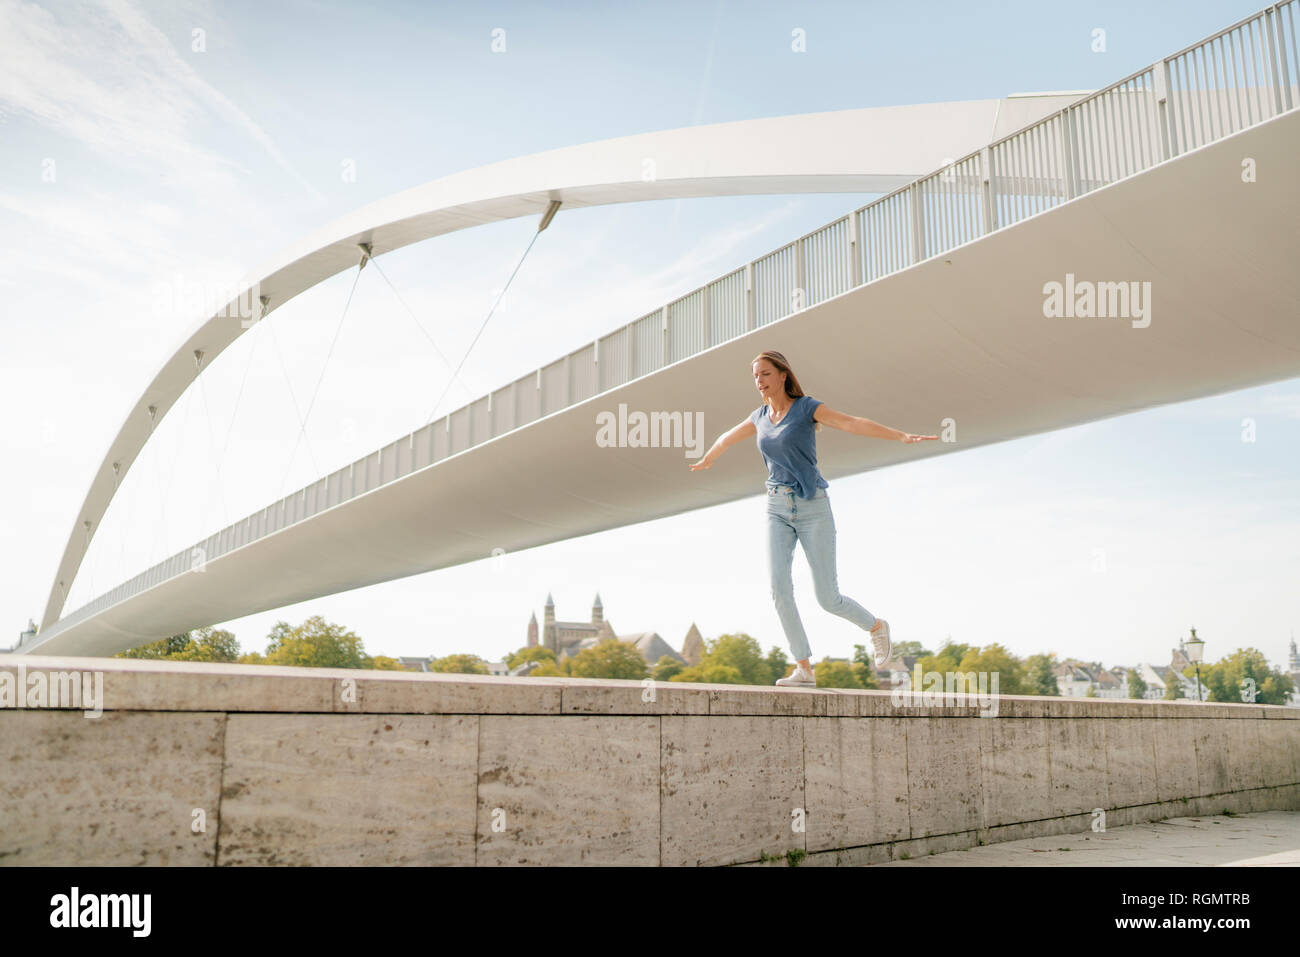 Pays-bas, Maastricht, jeune femme en équilibre sur un mur à un pont Banque D'Images